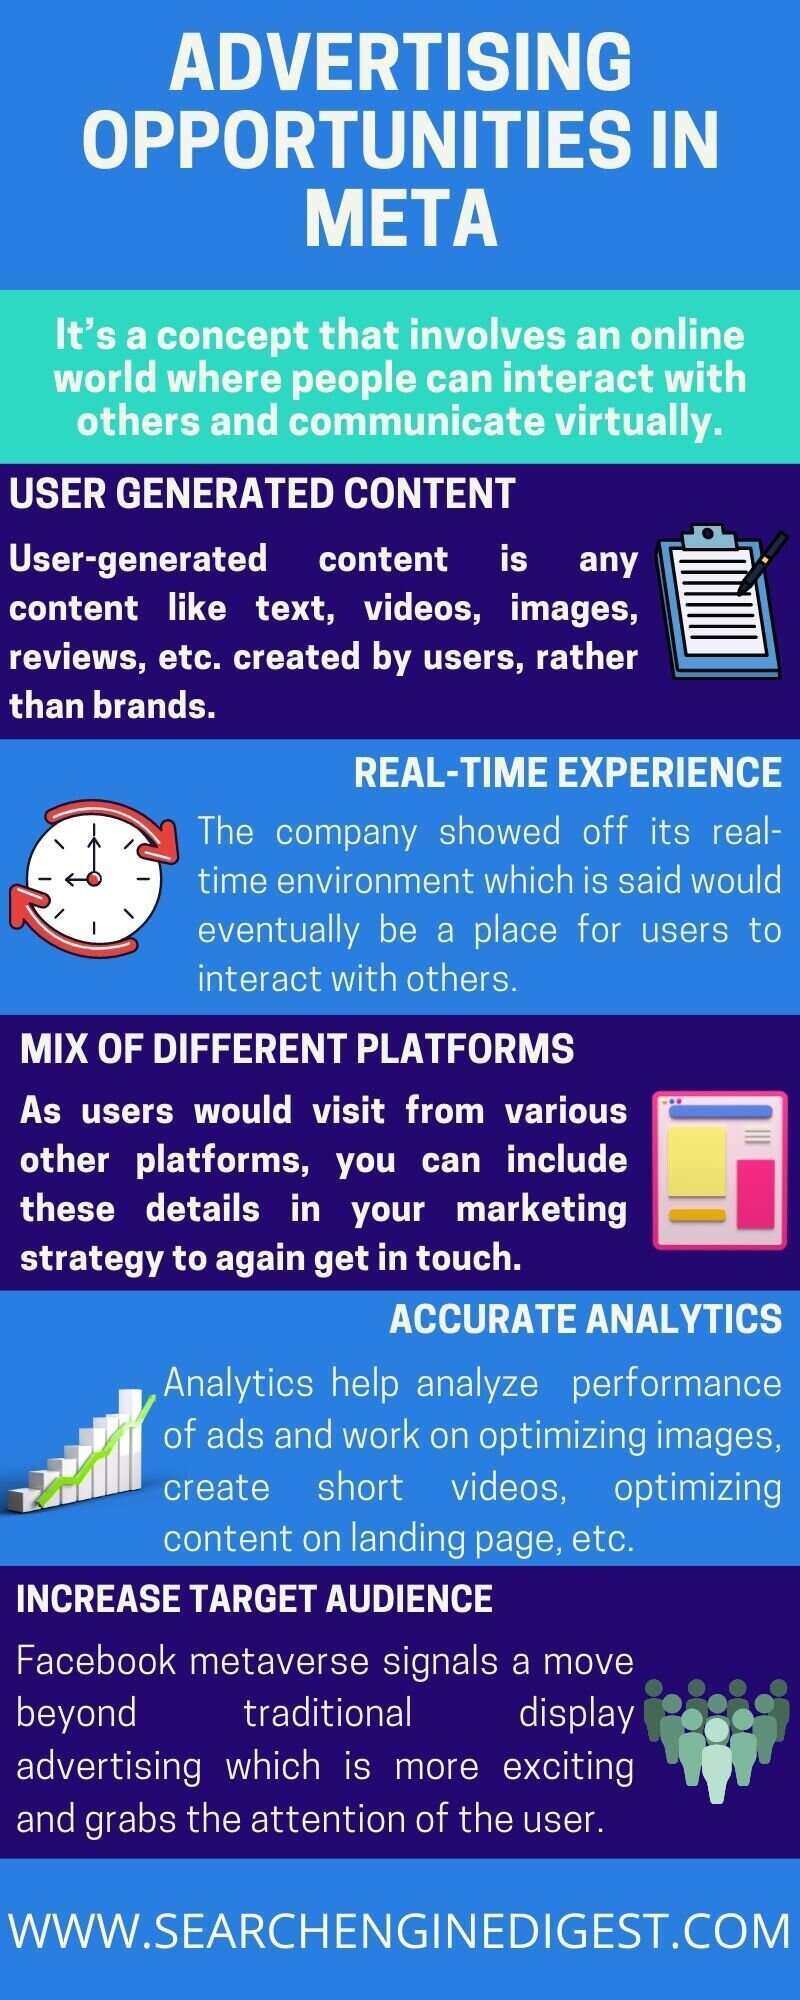 advertising opportunities in Meta (Facebook) infographic